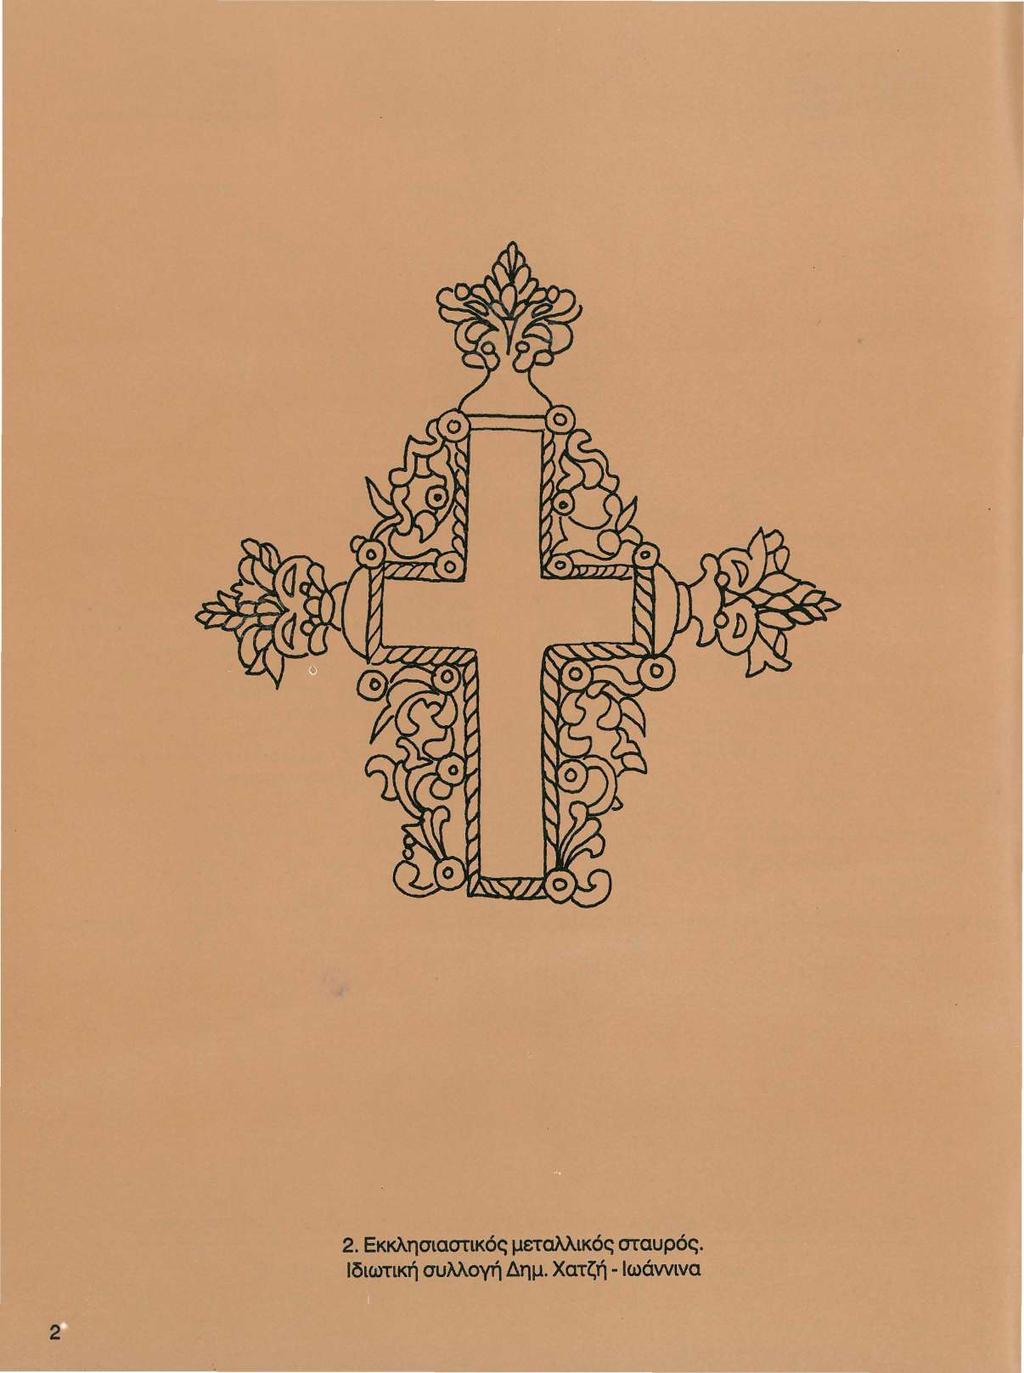 2. Εκκλησιαστικός μεταλλικός σταυρός.